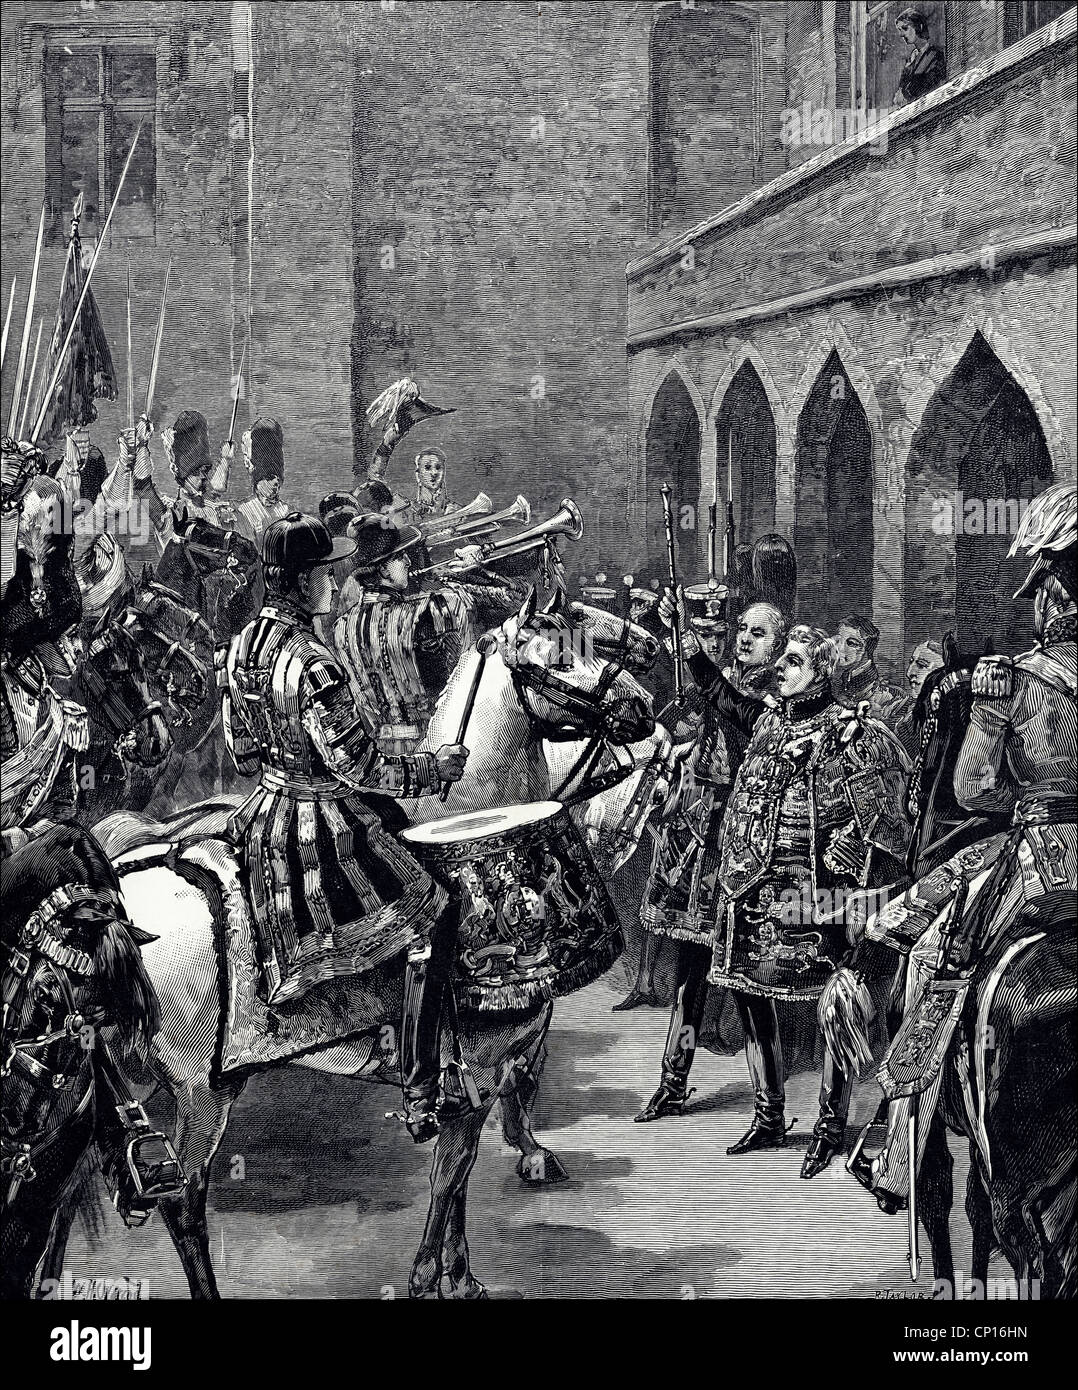 La reine Victoria proclame au Palais St James le 21 juin 1837. Gravure victorienne du 13 juin 1887 Banque D'Images